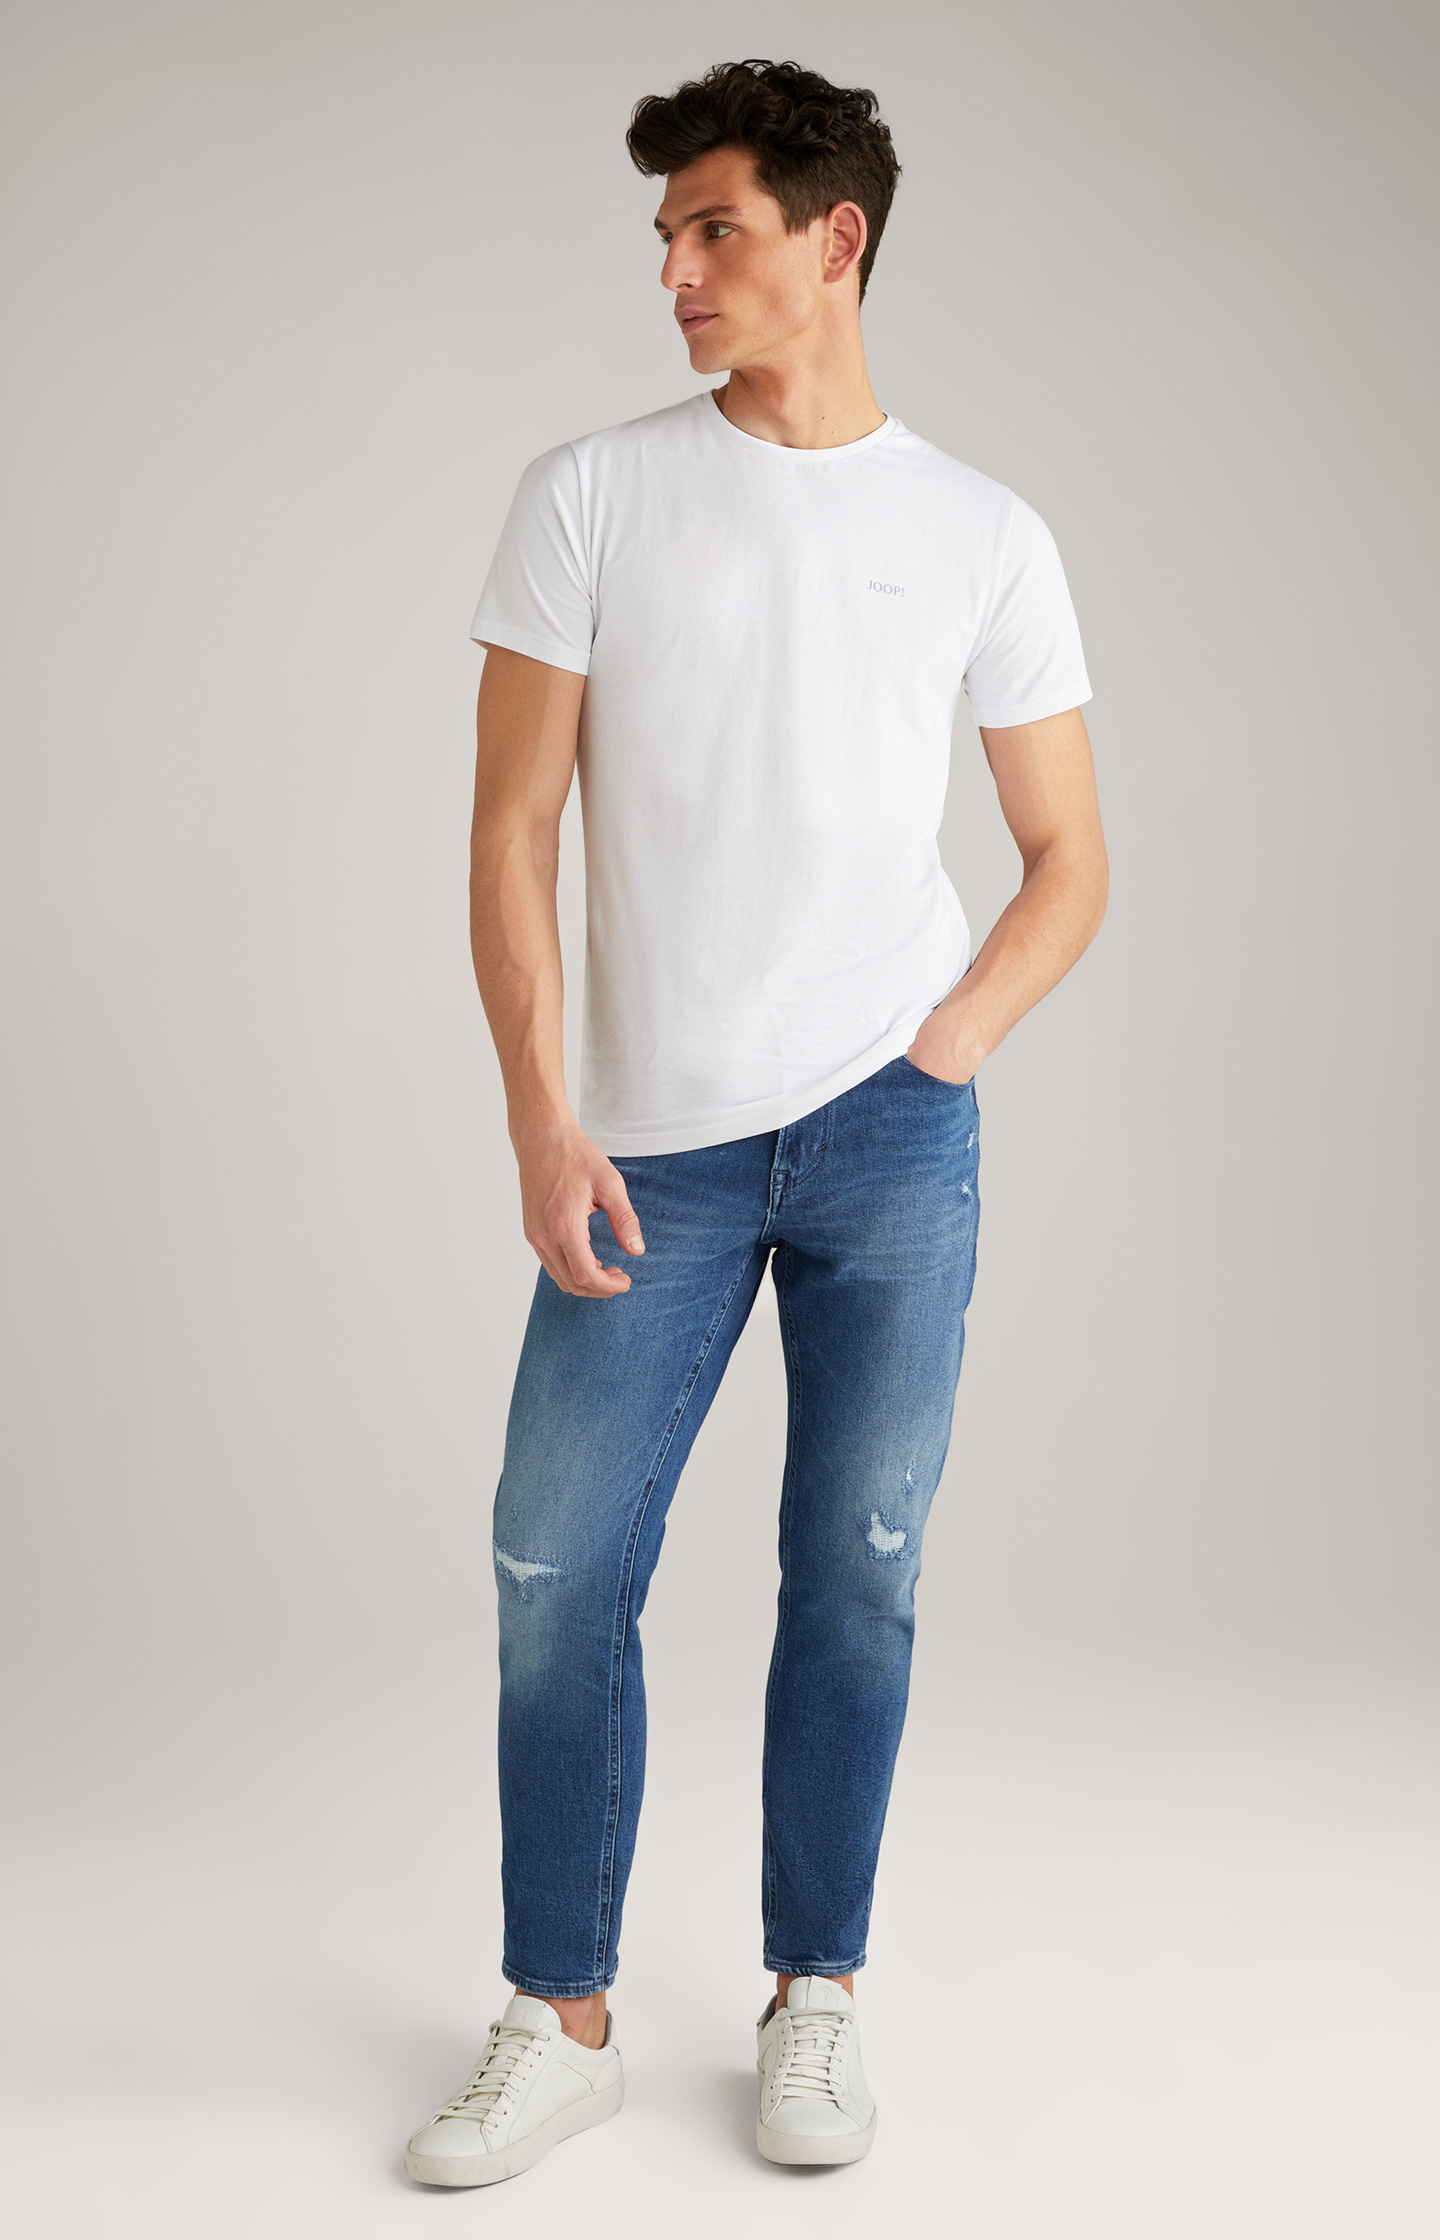 Blue the - in Jeans JOOP! Online in Re-Flex Pale Shop